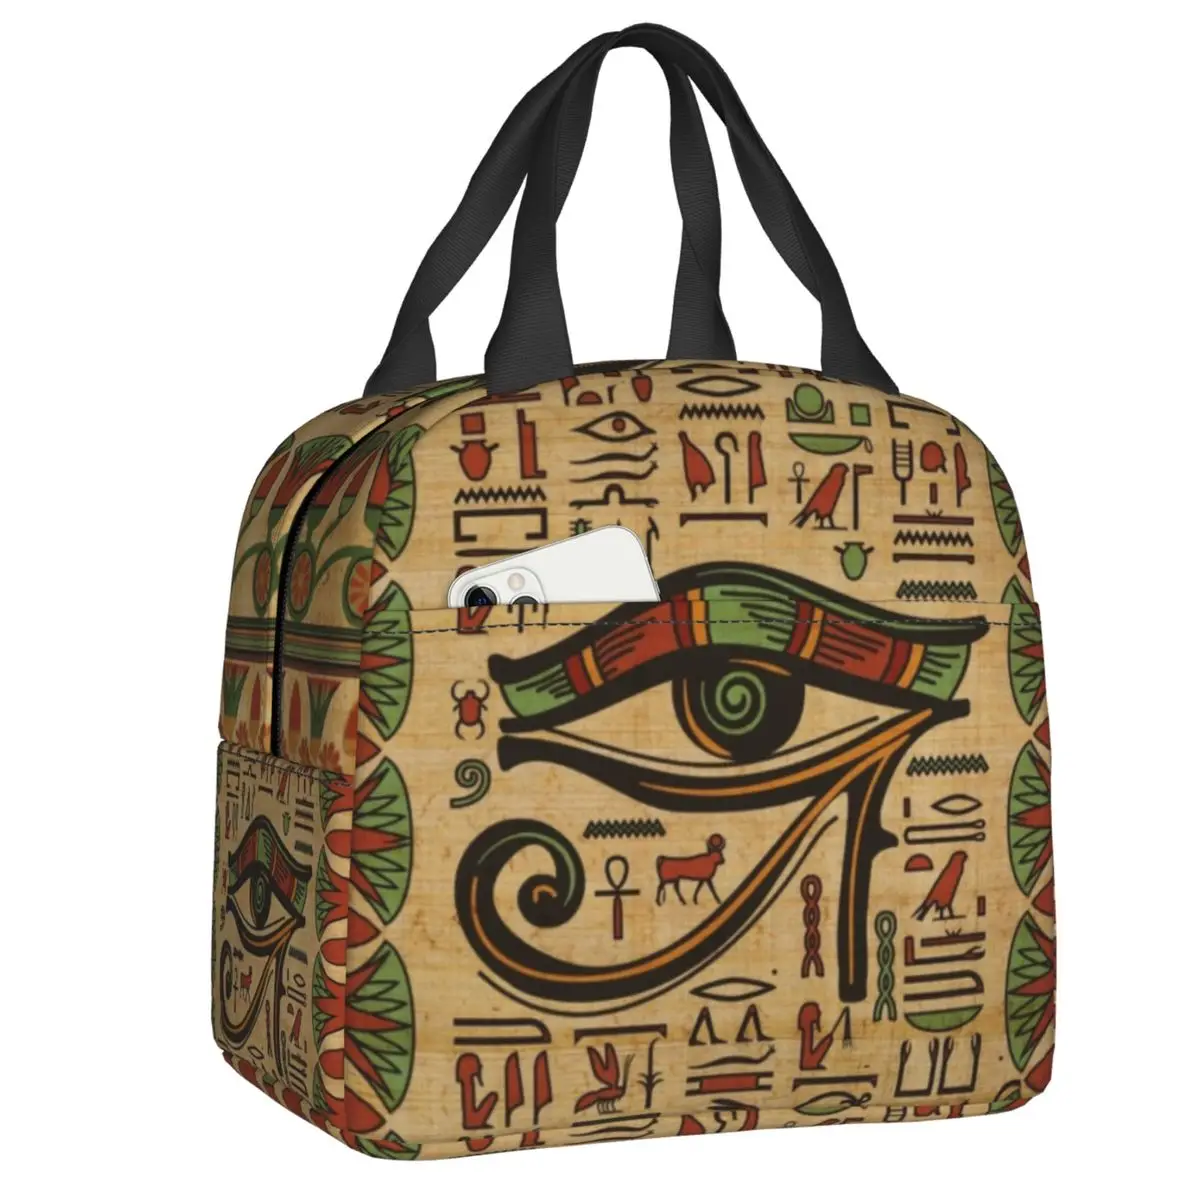 

Египетский Глаз хора Изолированные сумки для обеда для женщин древний Египетский гиероглиф термальный охладитель коробка бэнто для работы школы путешествий